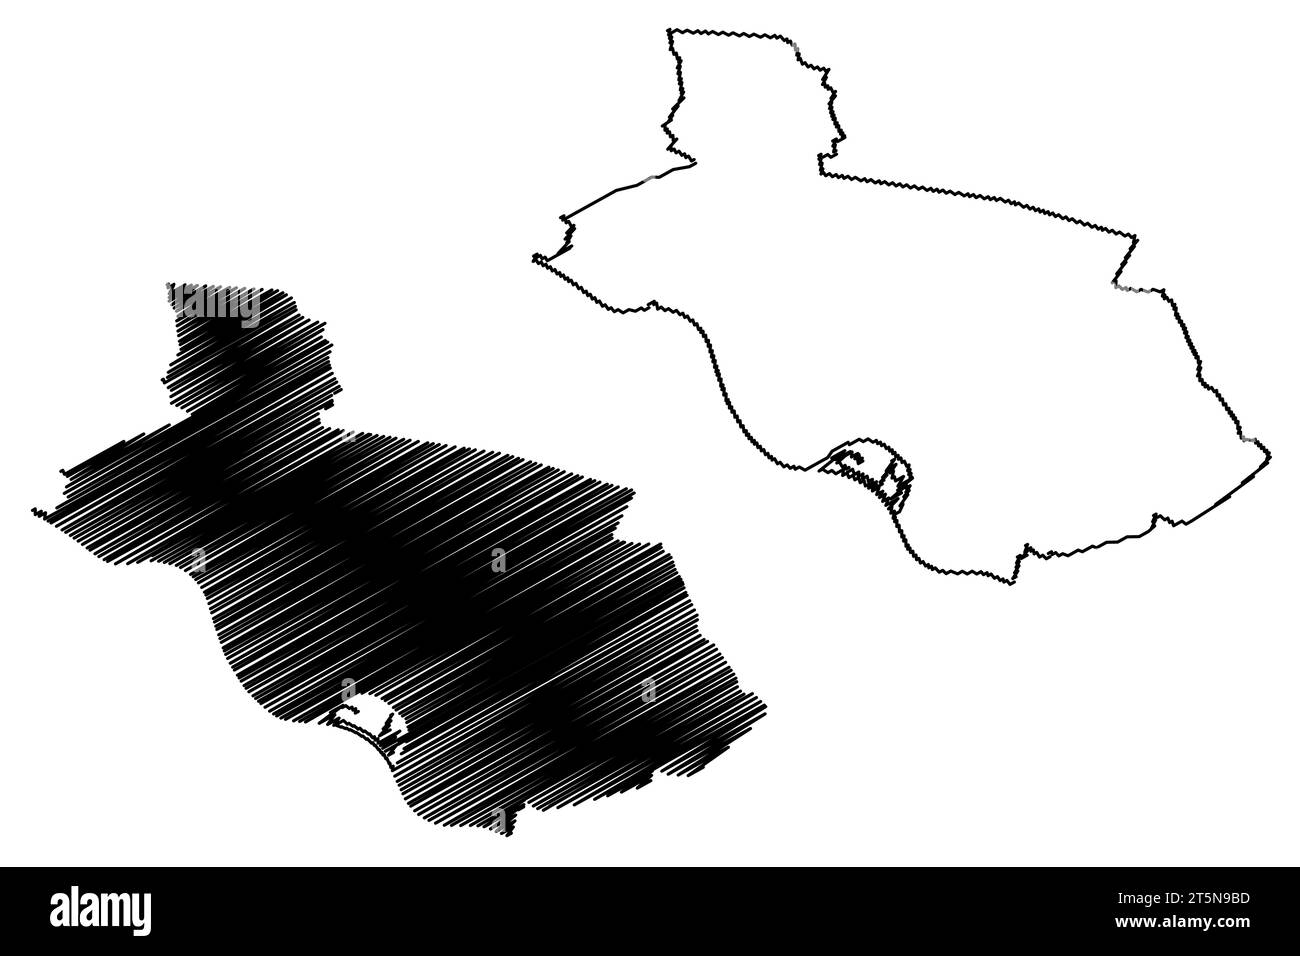 Illustrazione vettoriale della mappa della città e del comune di Wijchen (Regno dei Paesi Bassi, Olanda, provincia di Gelderland o Guelders), schizzo di scrittura Wijchen Illustrazione Vettoriale